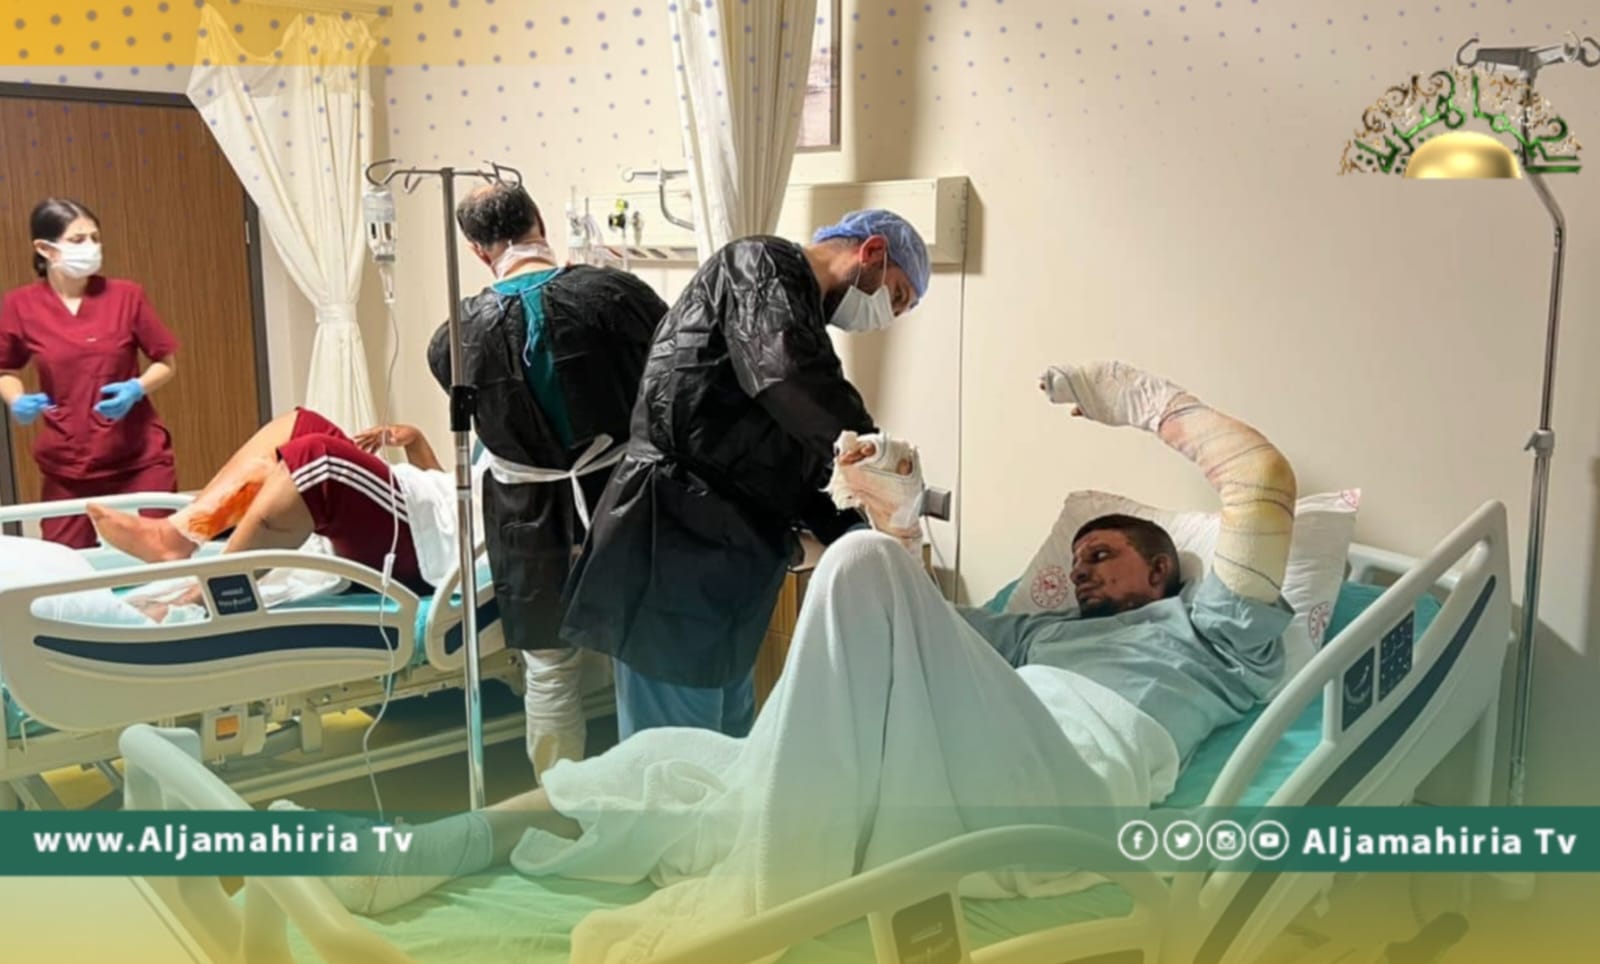 وزارة الصحة: وصول 6 مصابين في حادث انفجار بنت بية إلى تركيا لتلقي العلاج